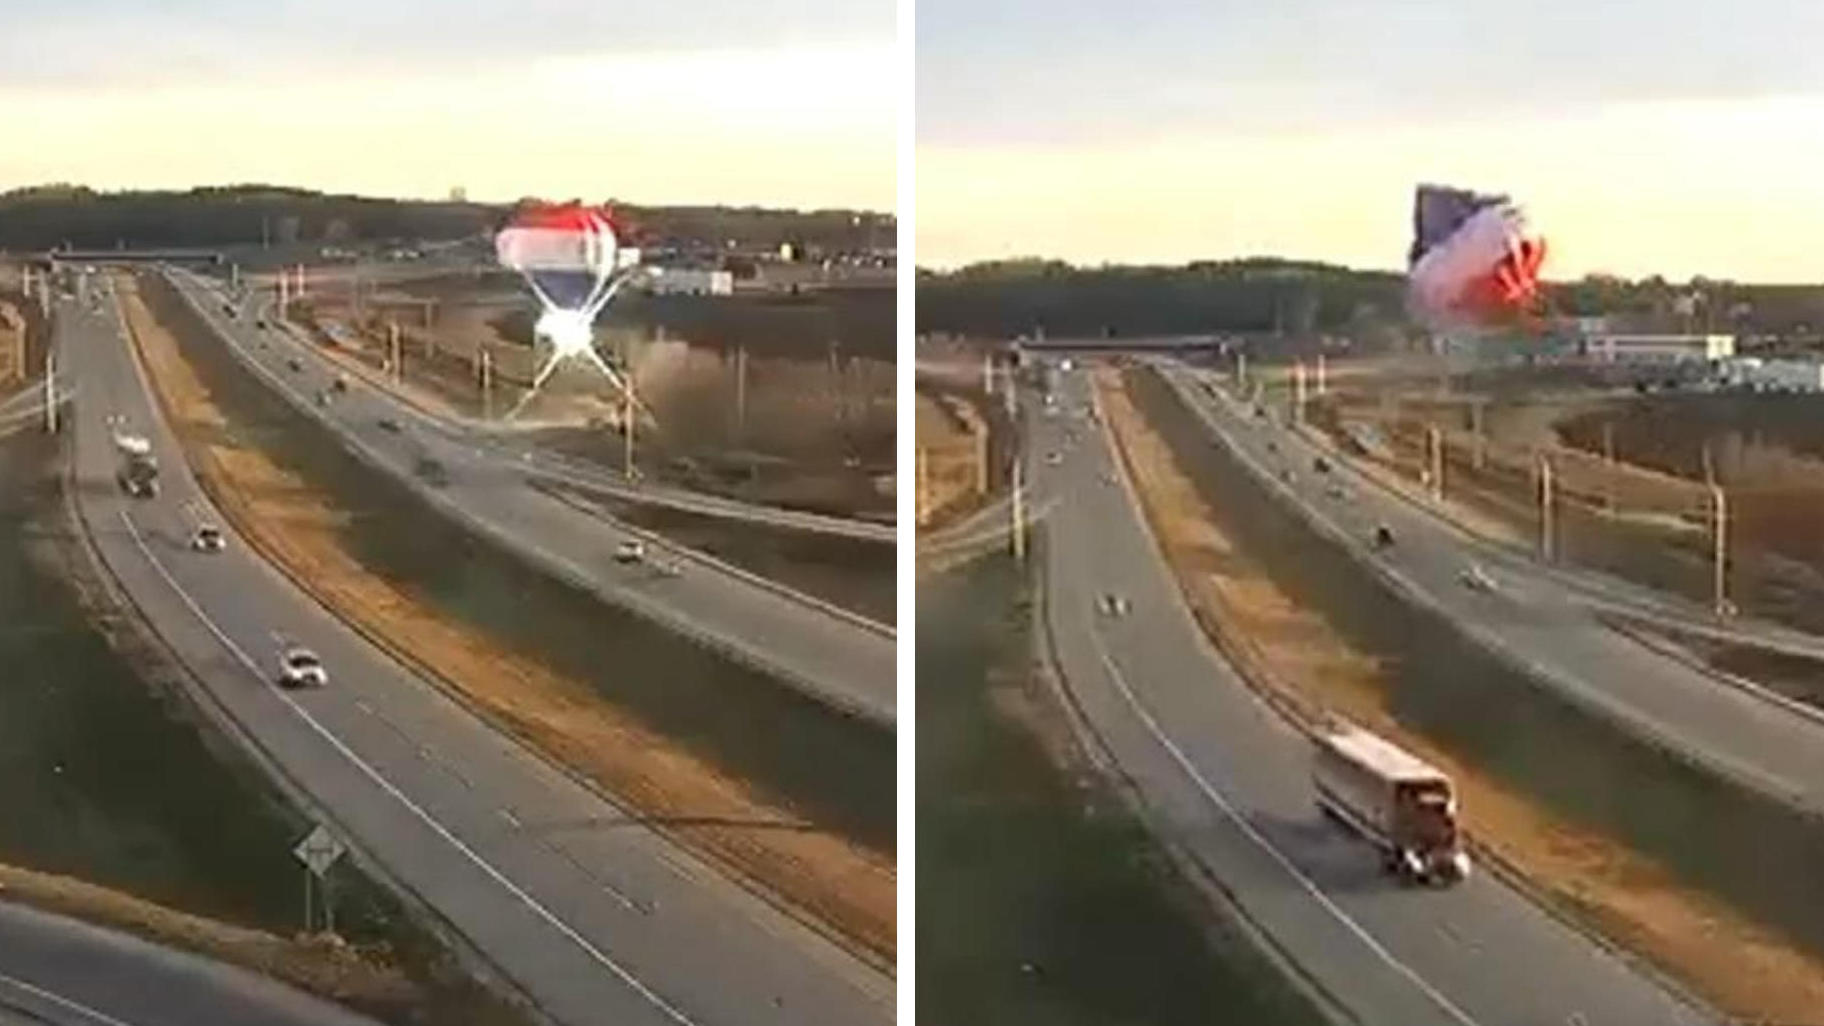 Heißluftballon kracht in Stromleitung Traum-Event wird zum Horror-Flug!